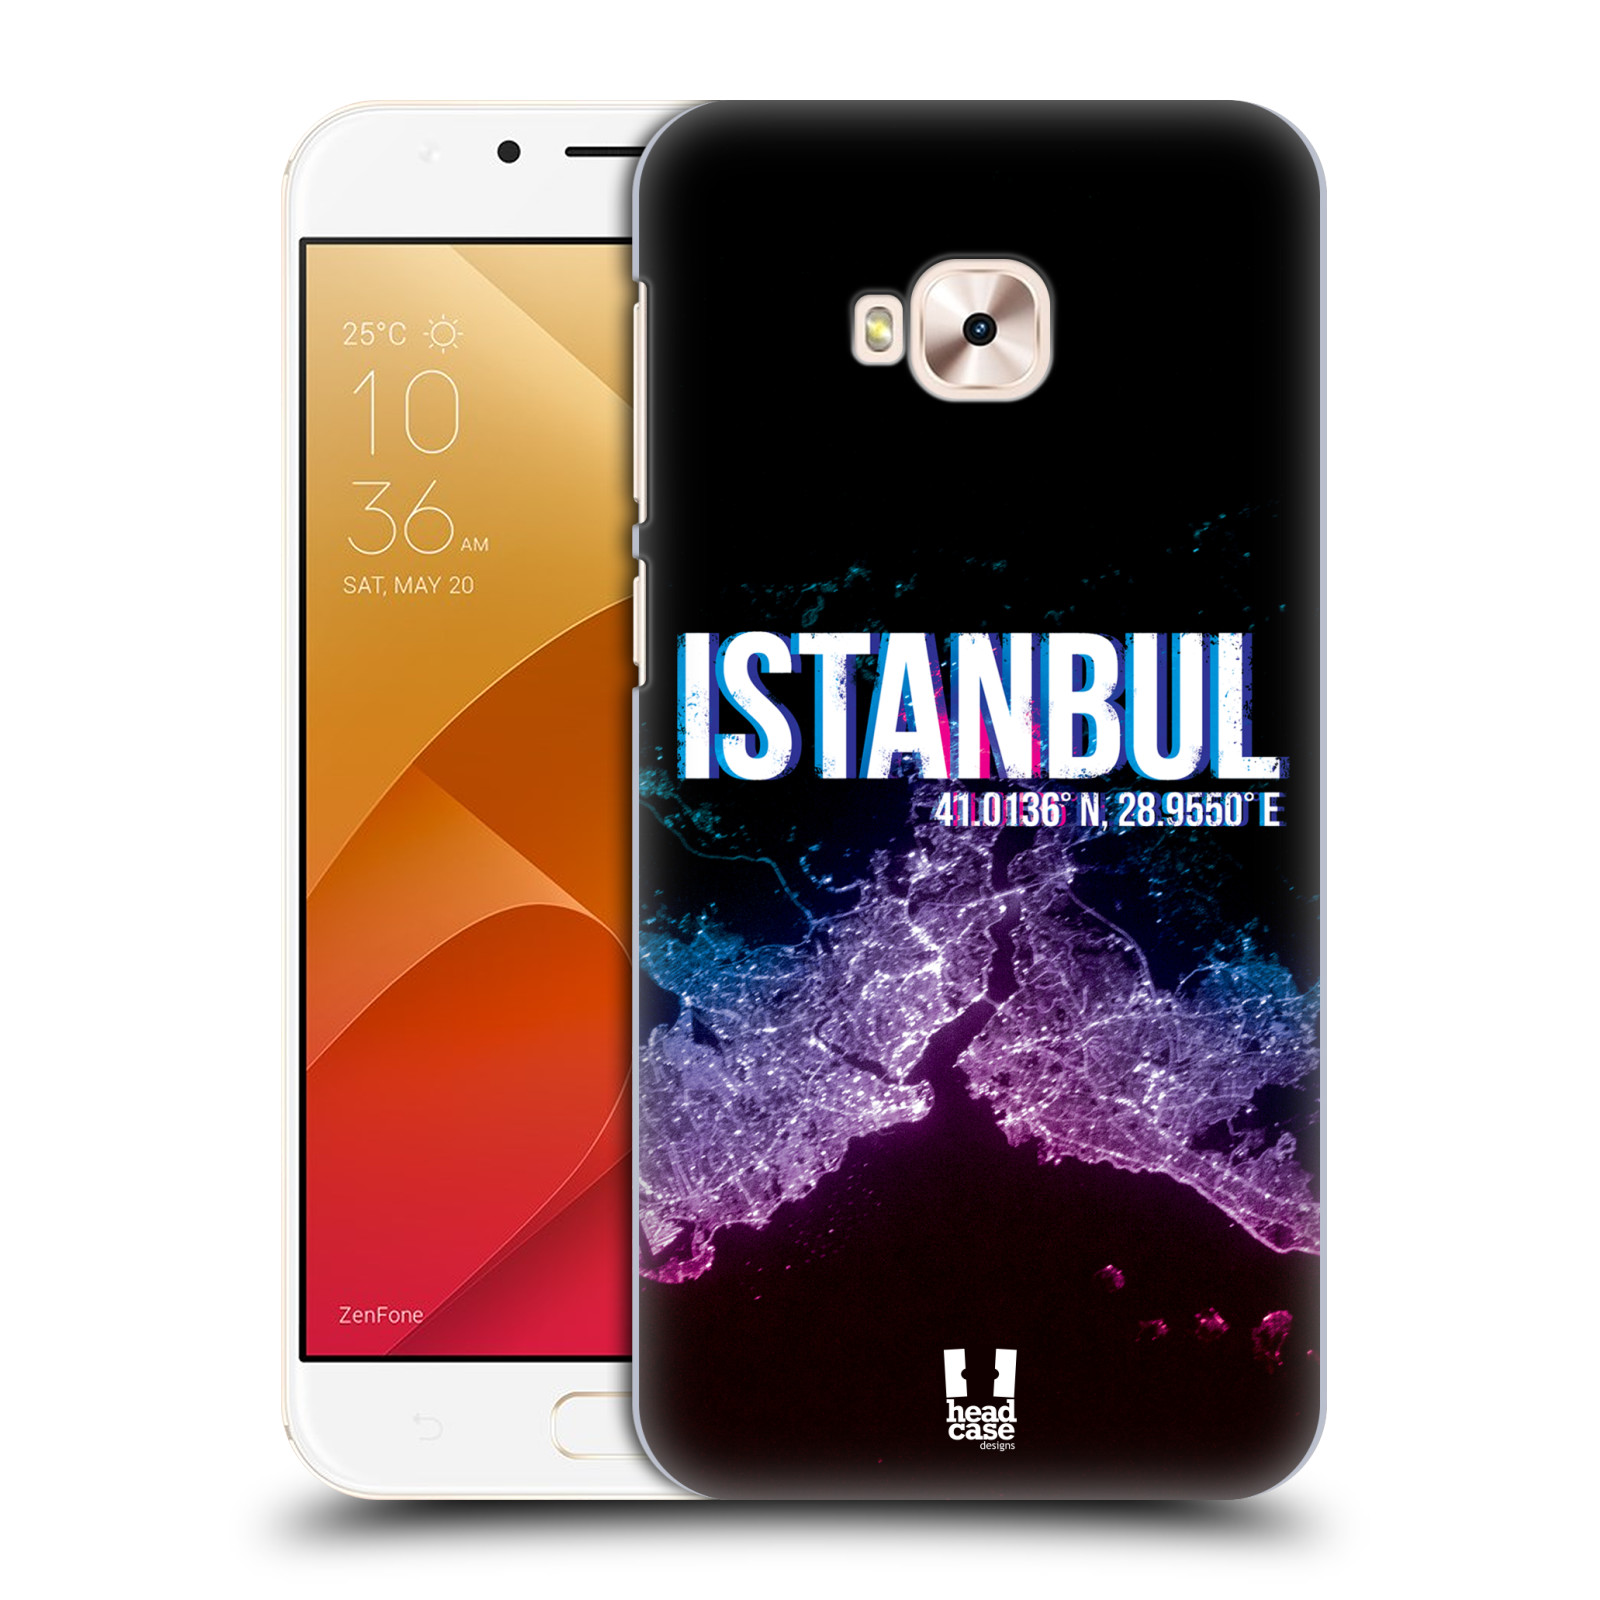 HEAD CASE plastový obal na mobil Asus Zenfone 4 Selfie Pro ZD552KL vzor Světla známých měst, Satelitní snímky TURECKO, ISTANBUL